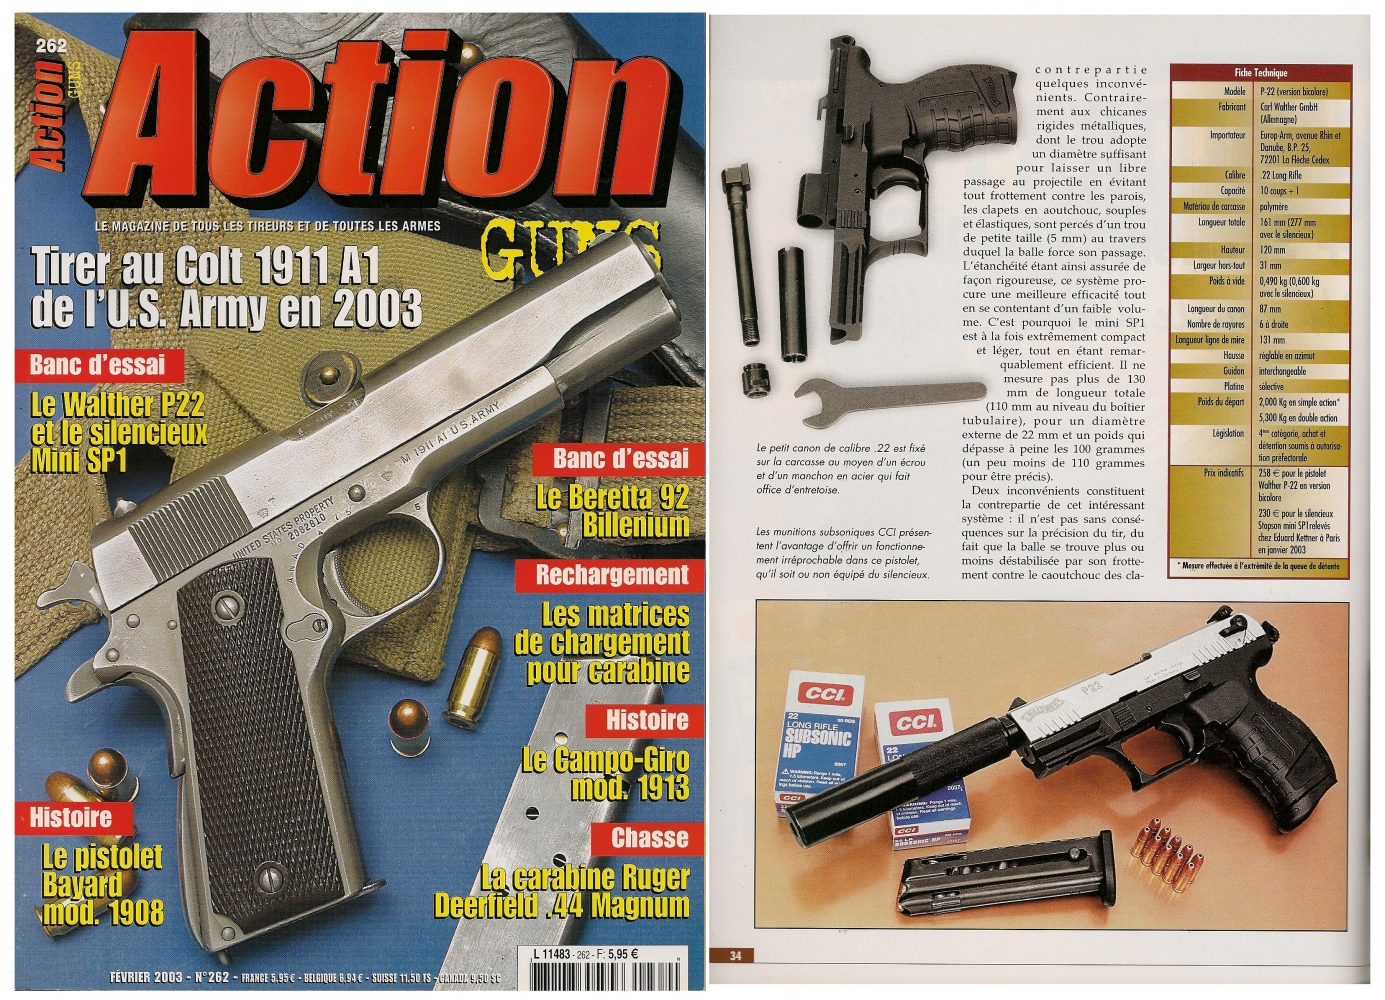 Le banc d’essai du Walther P-22 accompagné du silencieux mini SP1 a été publié sur 6 pages dans le magazine Action Guns n°262 (février 2003). 